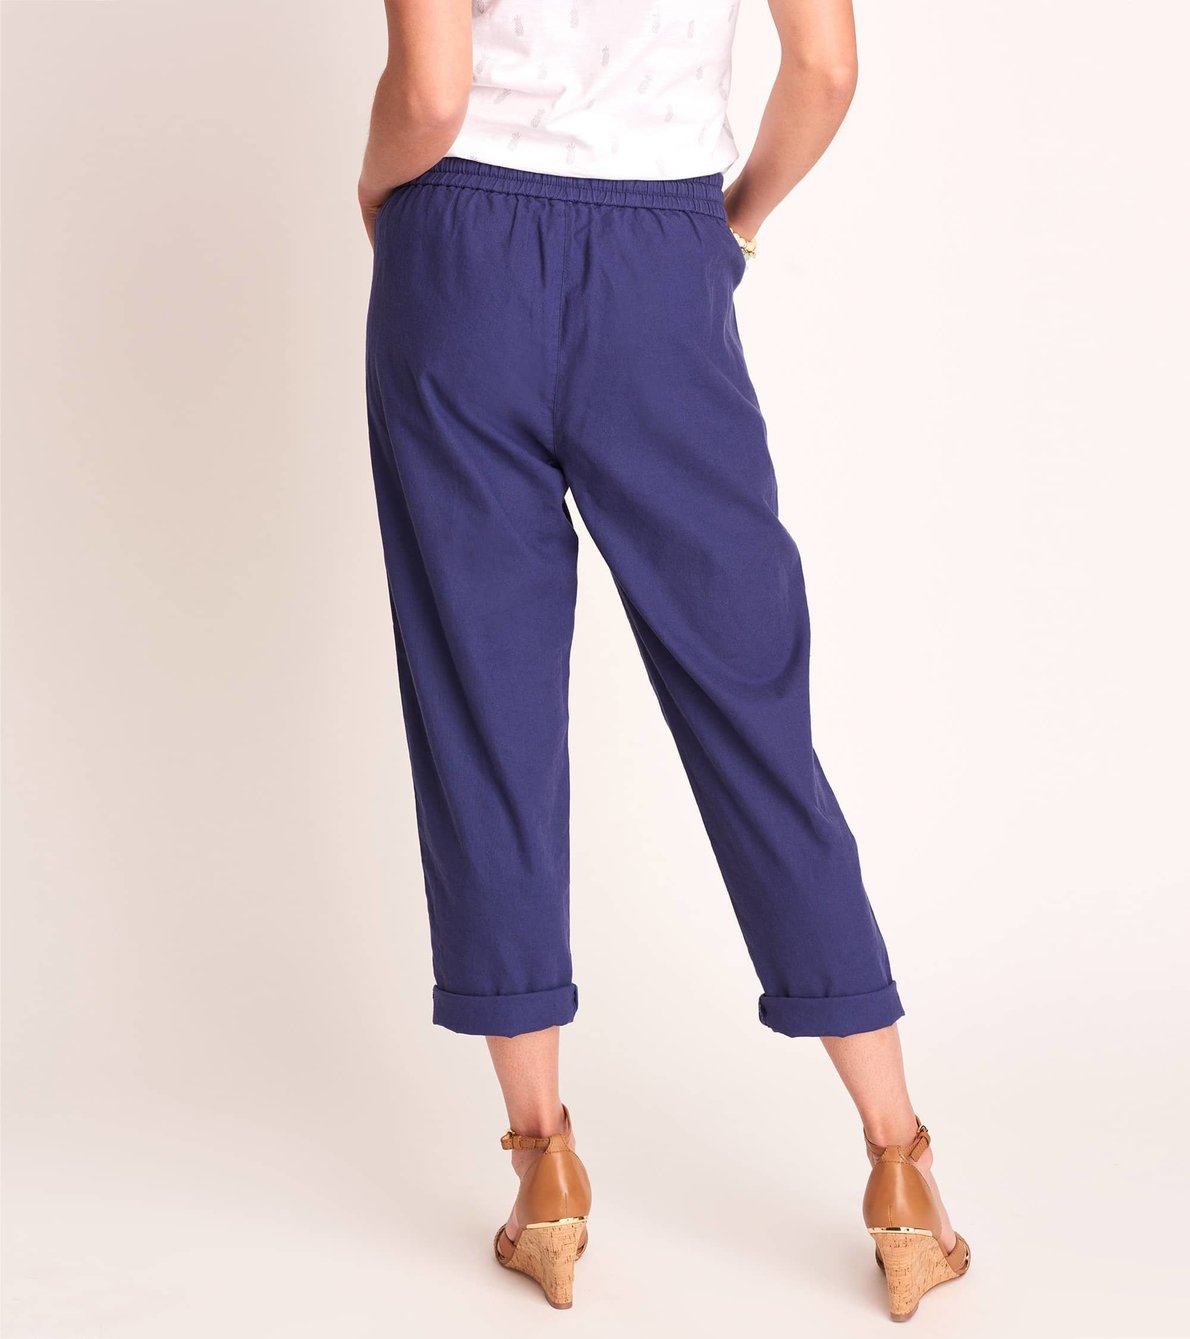 View larger image of Sierra Cotton Linen Pants - Patriot Blue